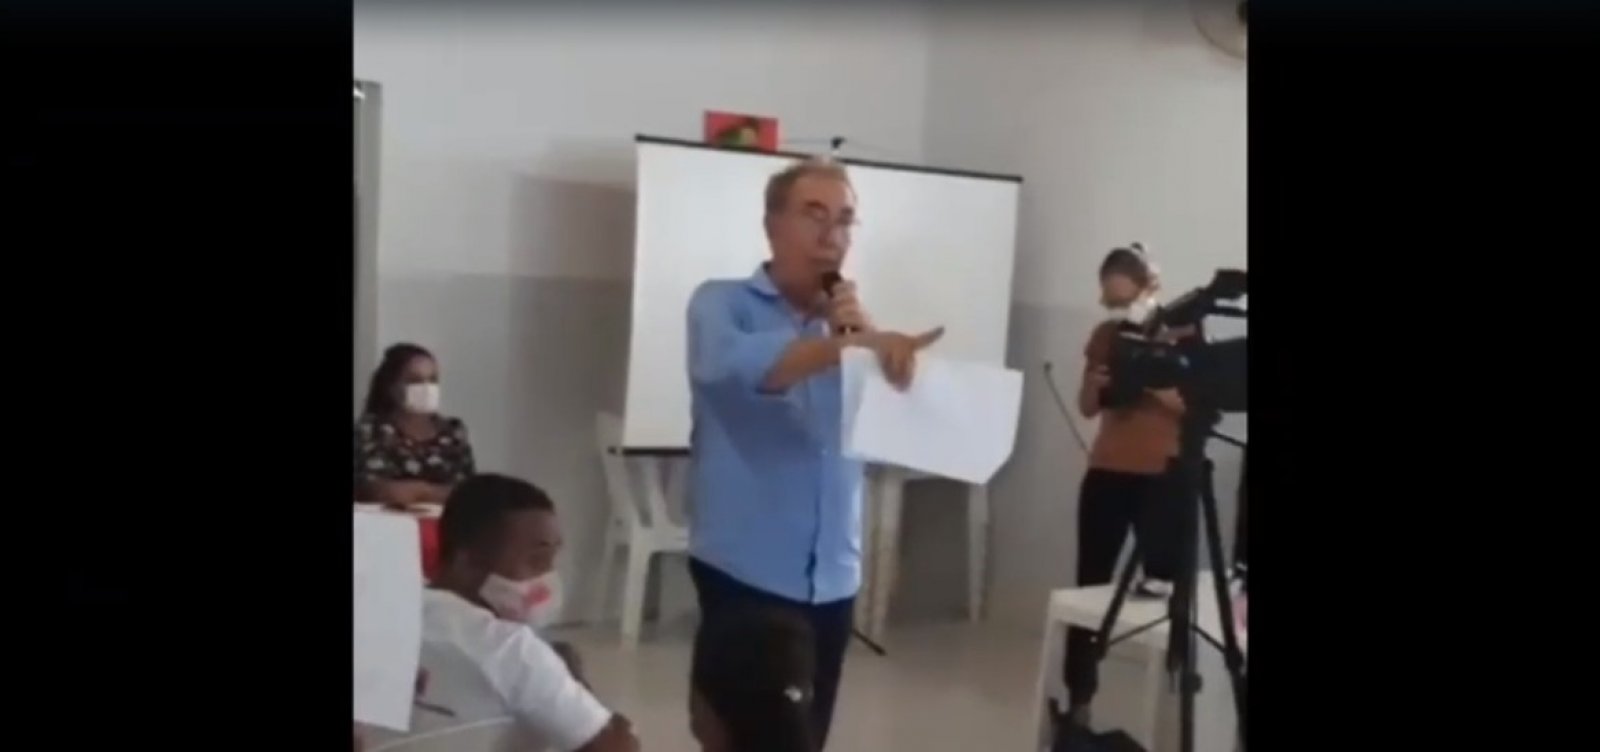 Prefeito bate-boca e quase 'sai na mão' com professores em cidade da Chapada; veja vídeo